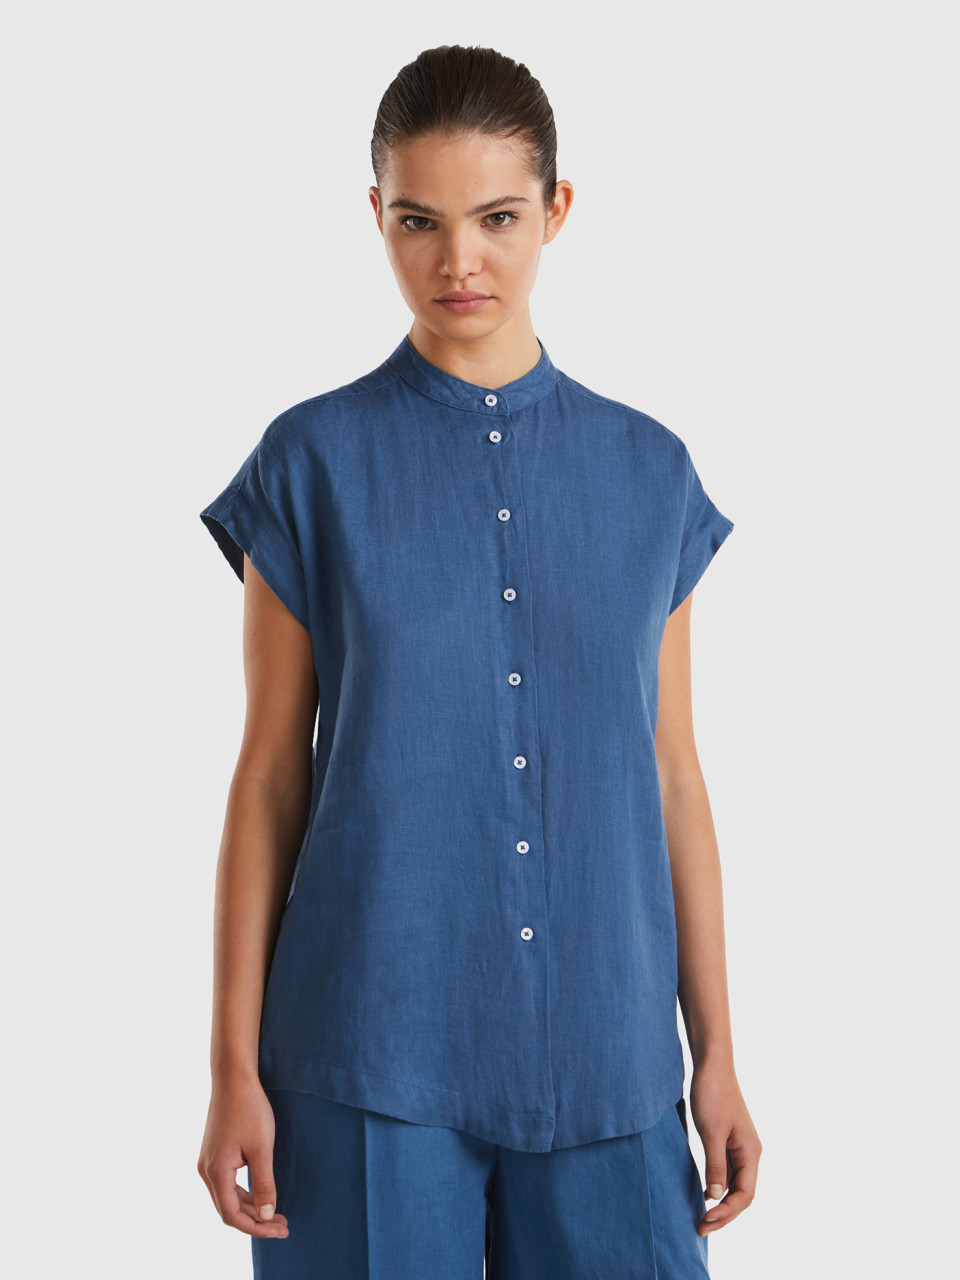 Benetton, Mandarin Shirt In Pure Linen, Air Force Blue, Women